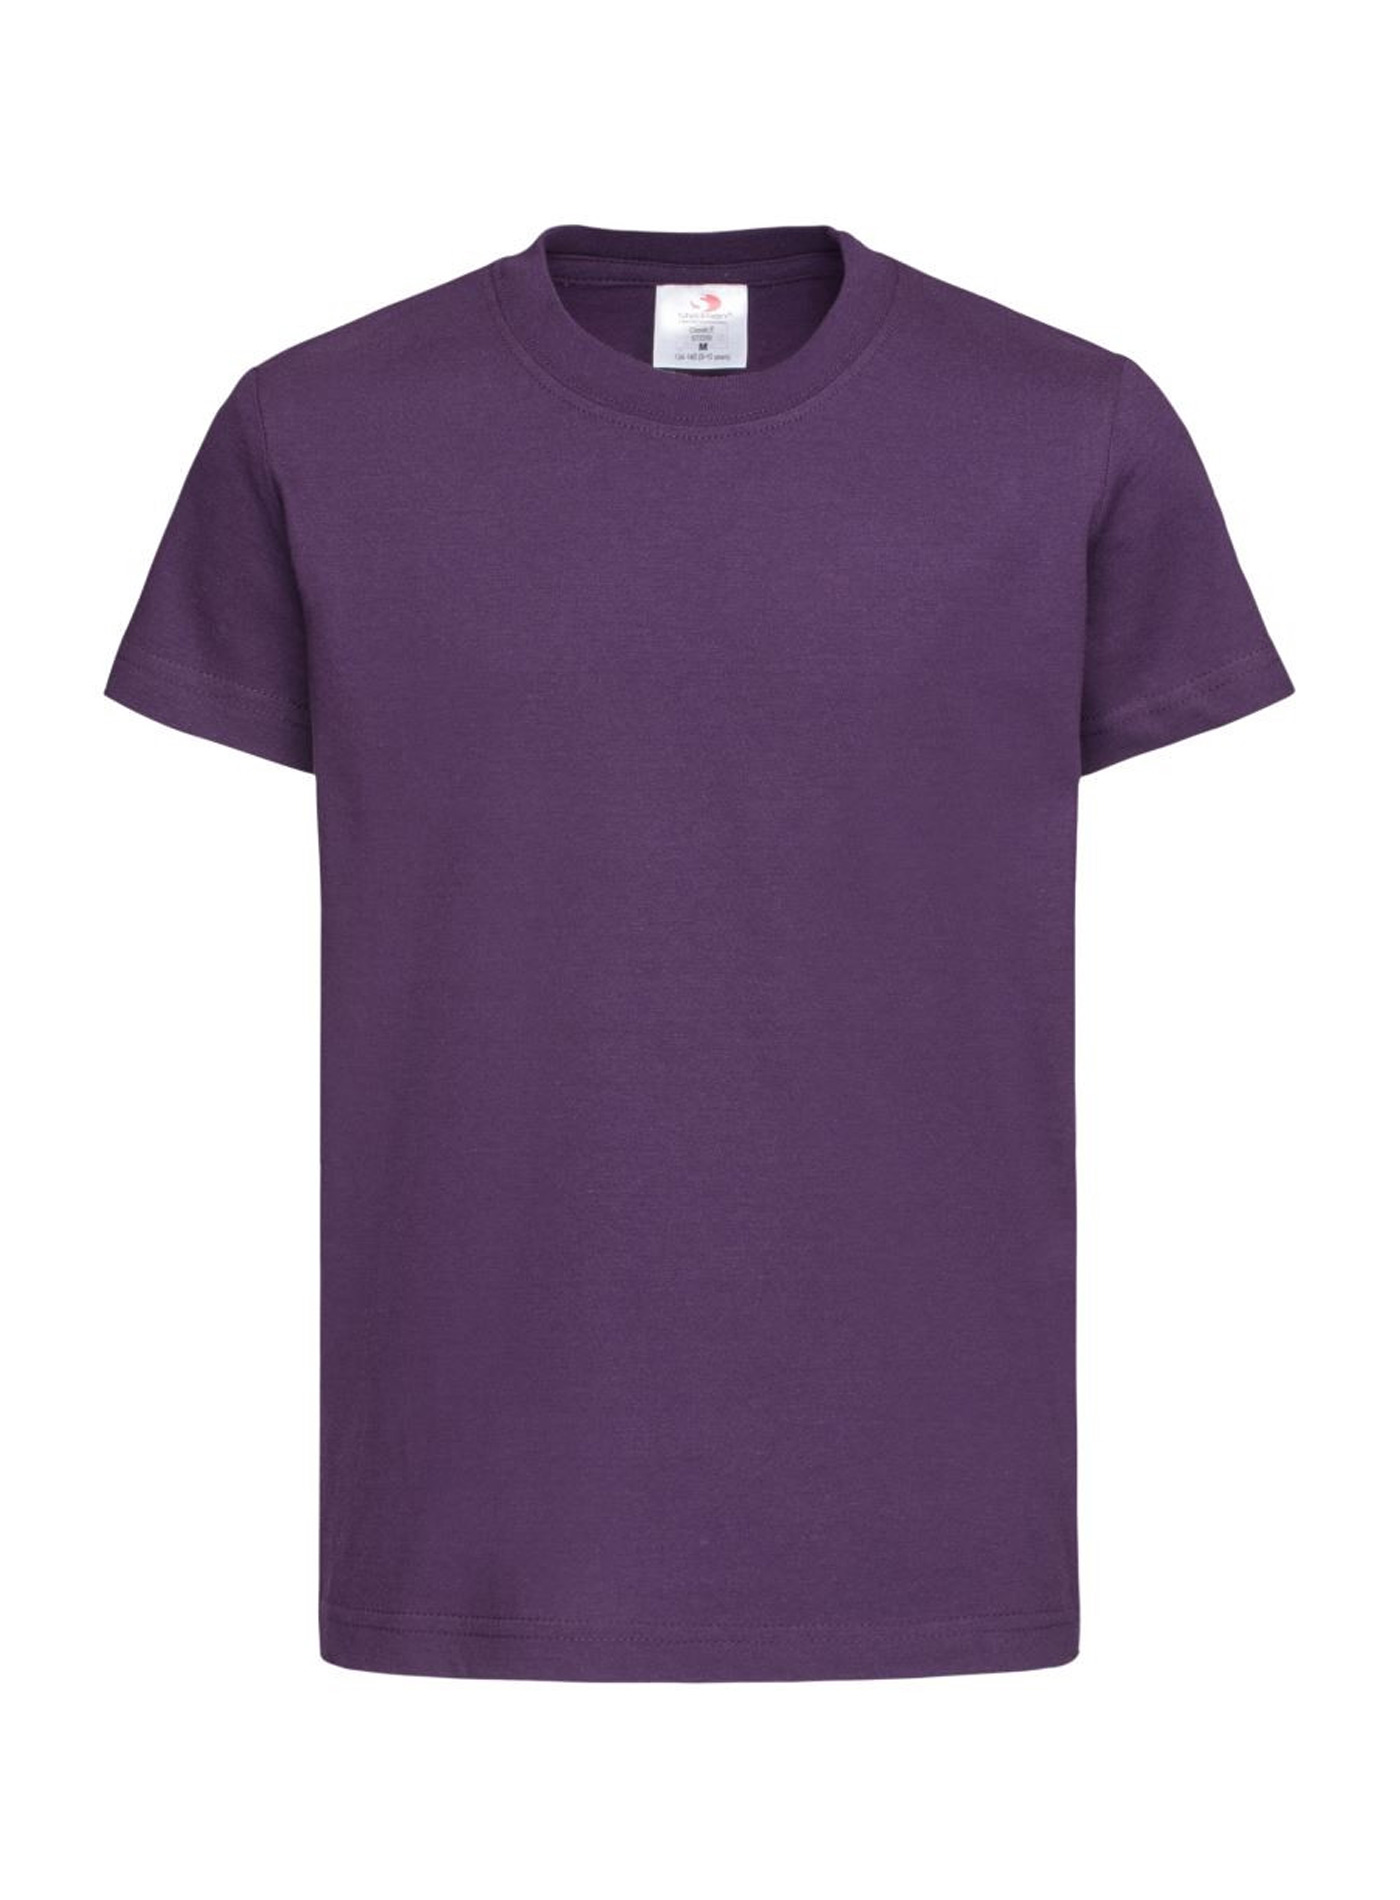 Prodloužené tričko - Tmavě fialová XL